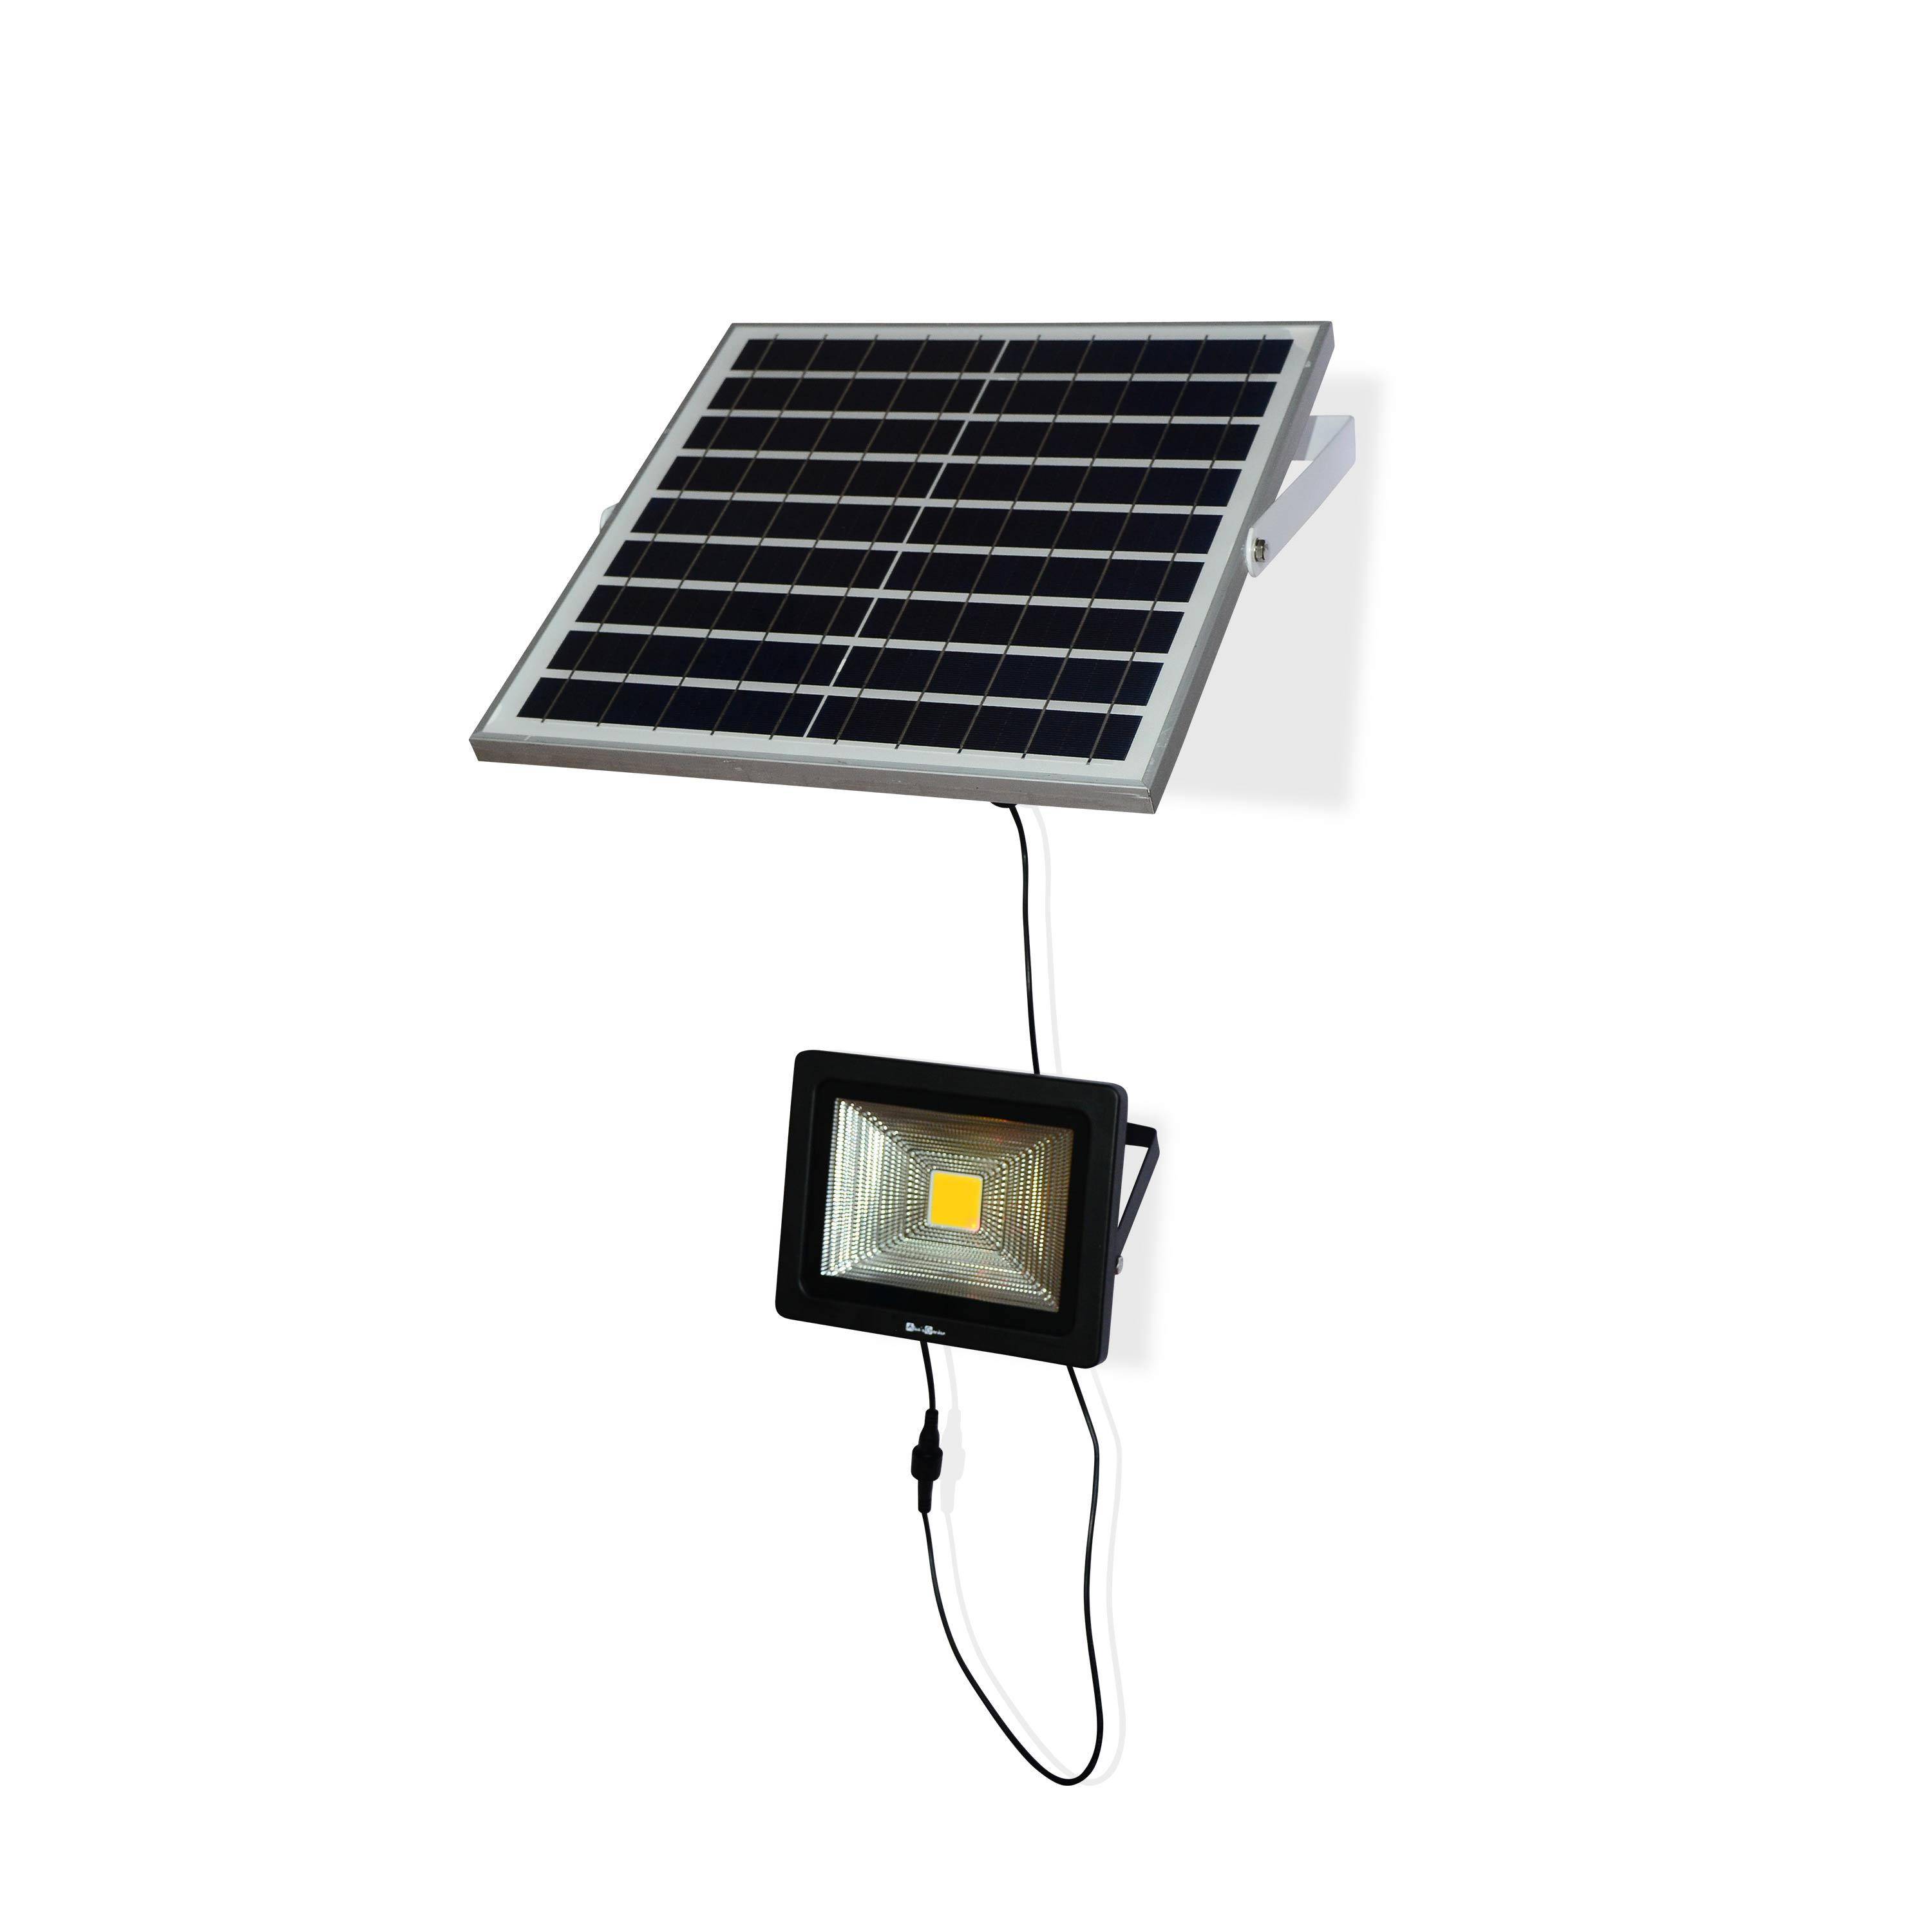 Projecteur solaire LED 20W avec panneau solaire télécommandé blanc chaud, lampe résistante à la pluie et autonome, spot extra puissant 2400 lumens équivalent 150W Photo3